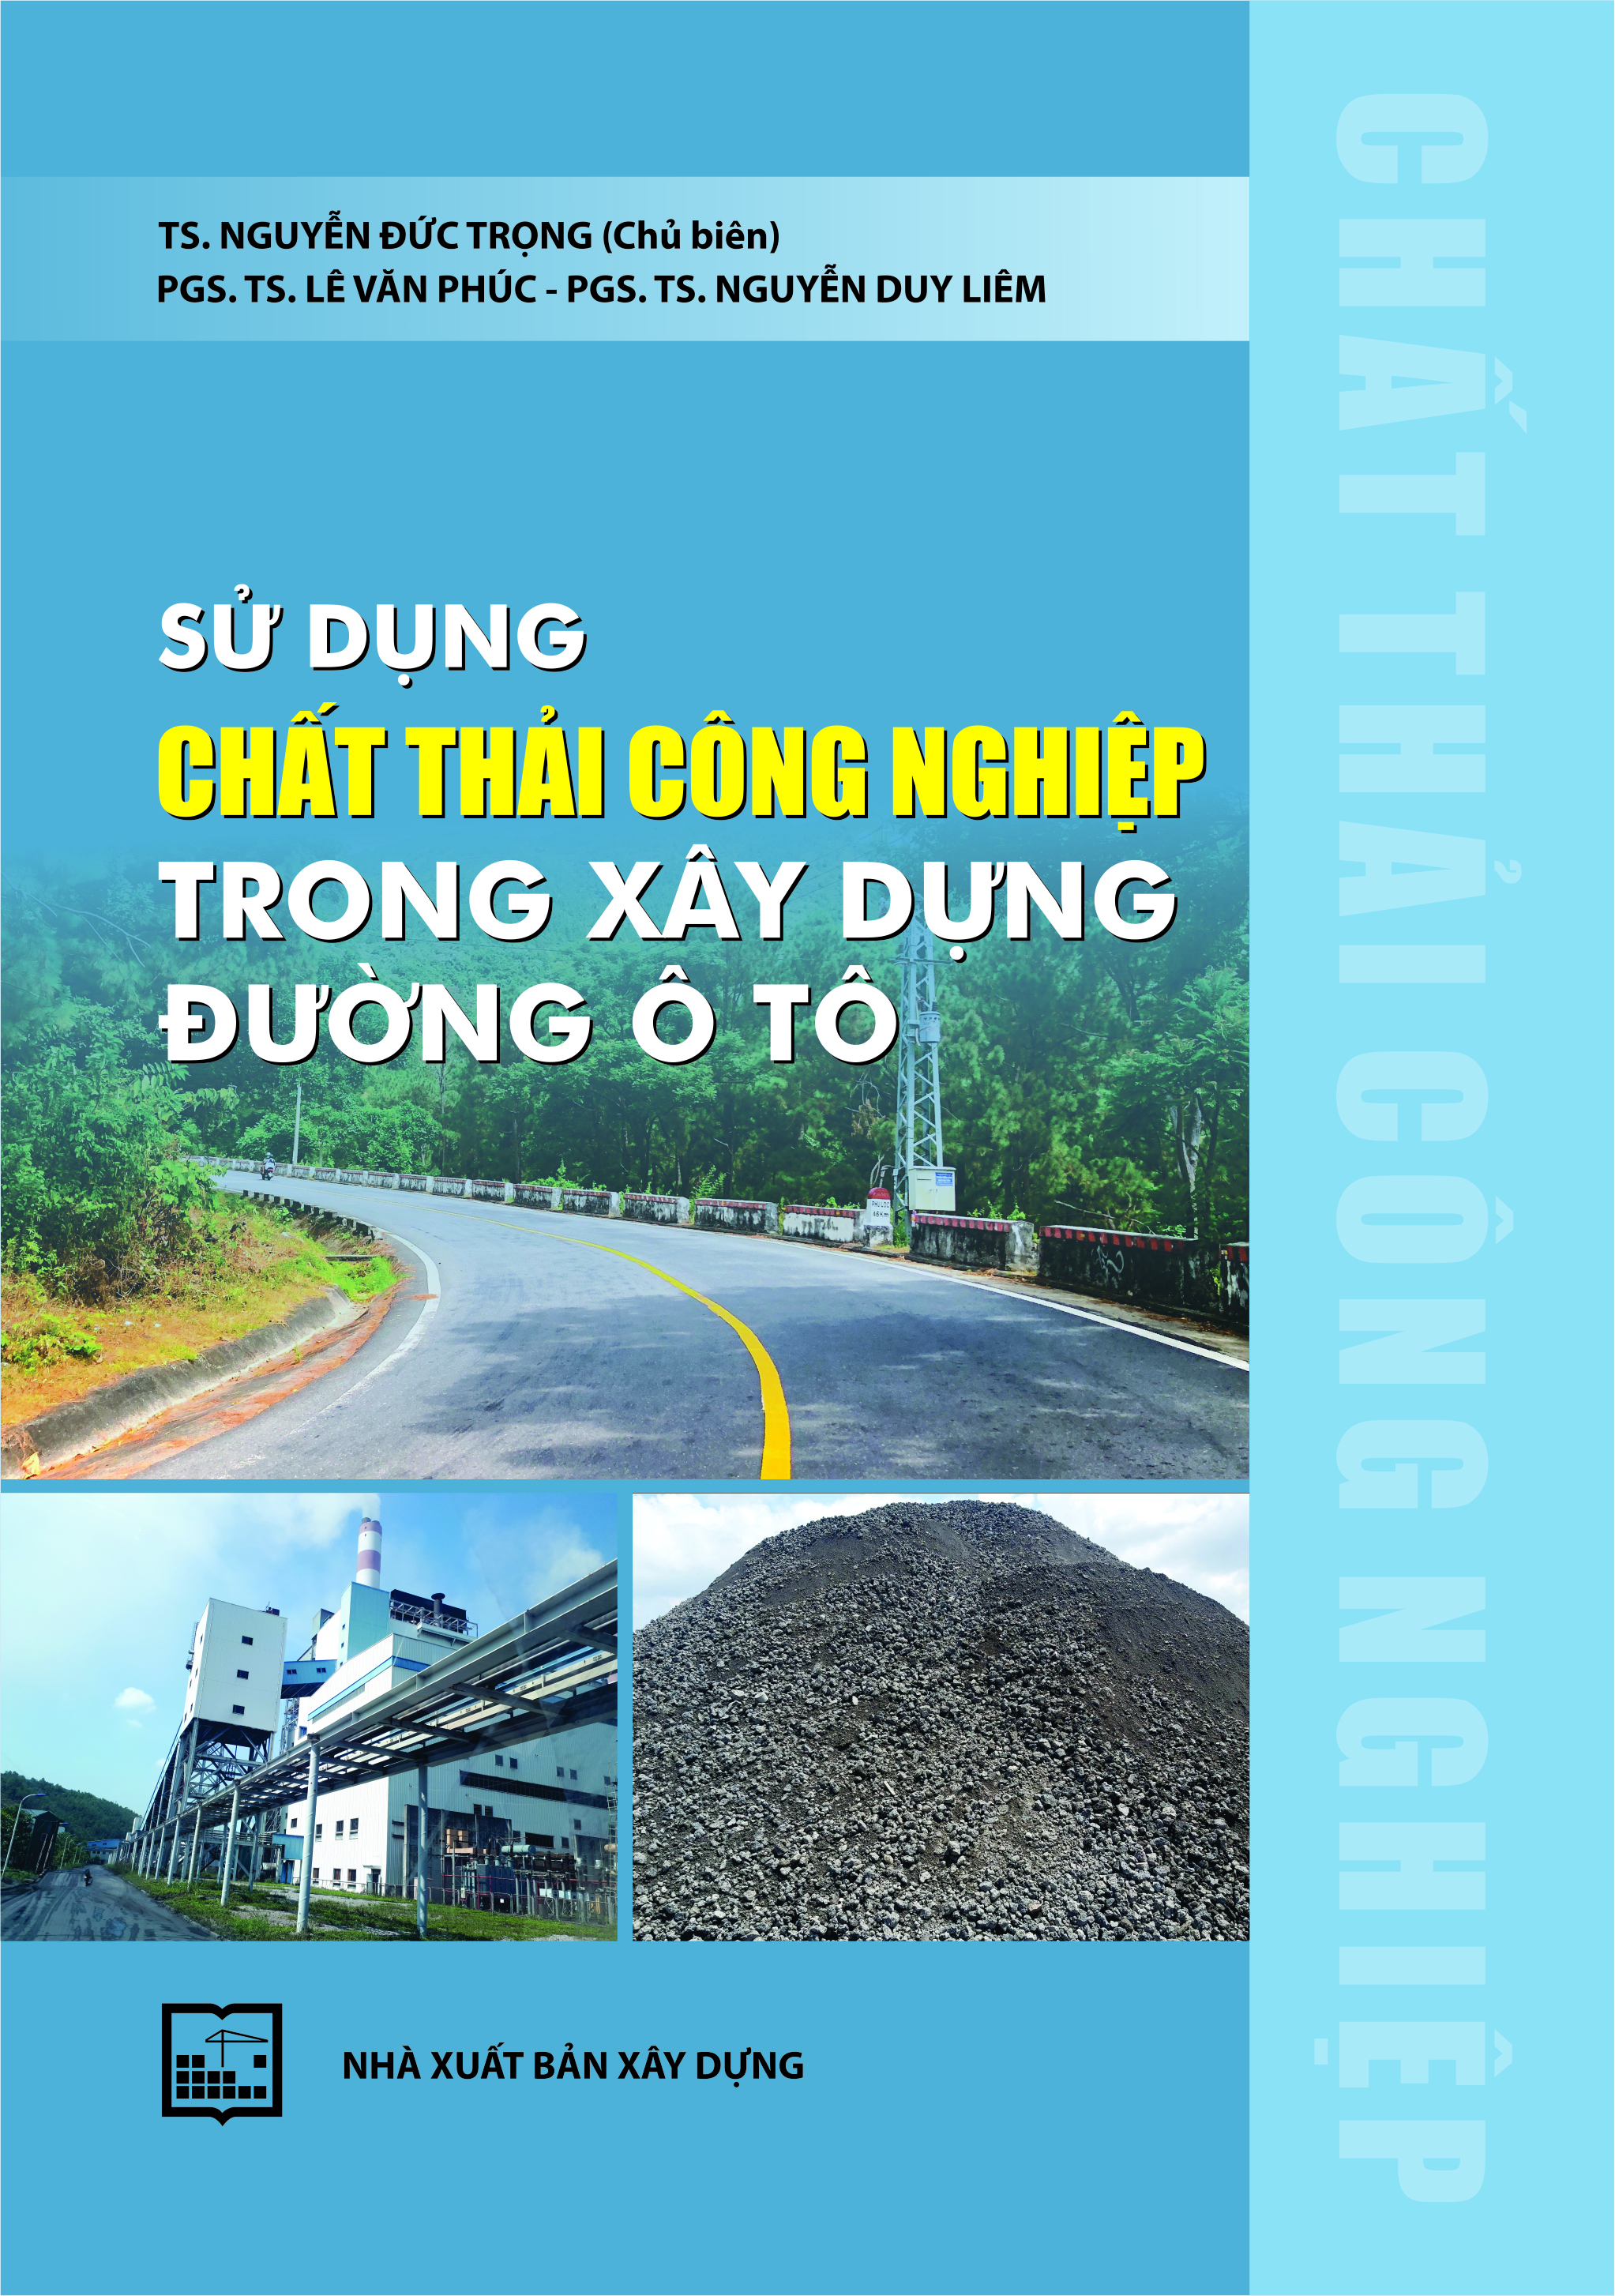 Sử dụng chất thải công nghiệp trong xây dựng đường ô tô